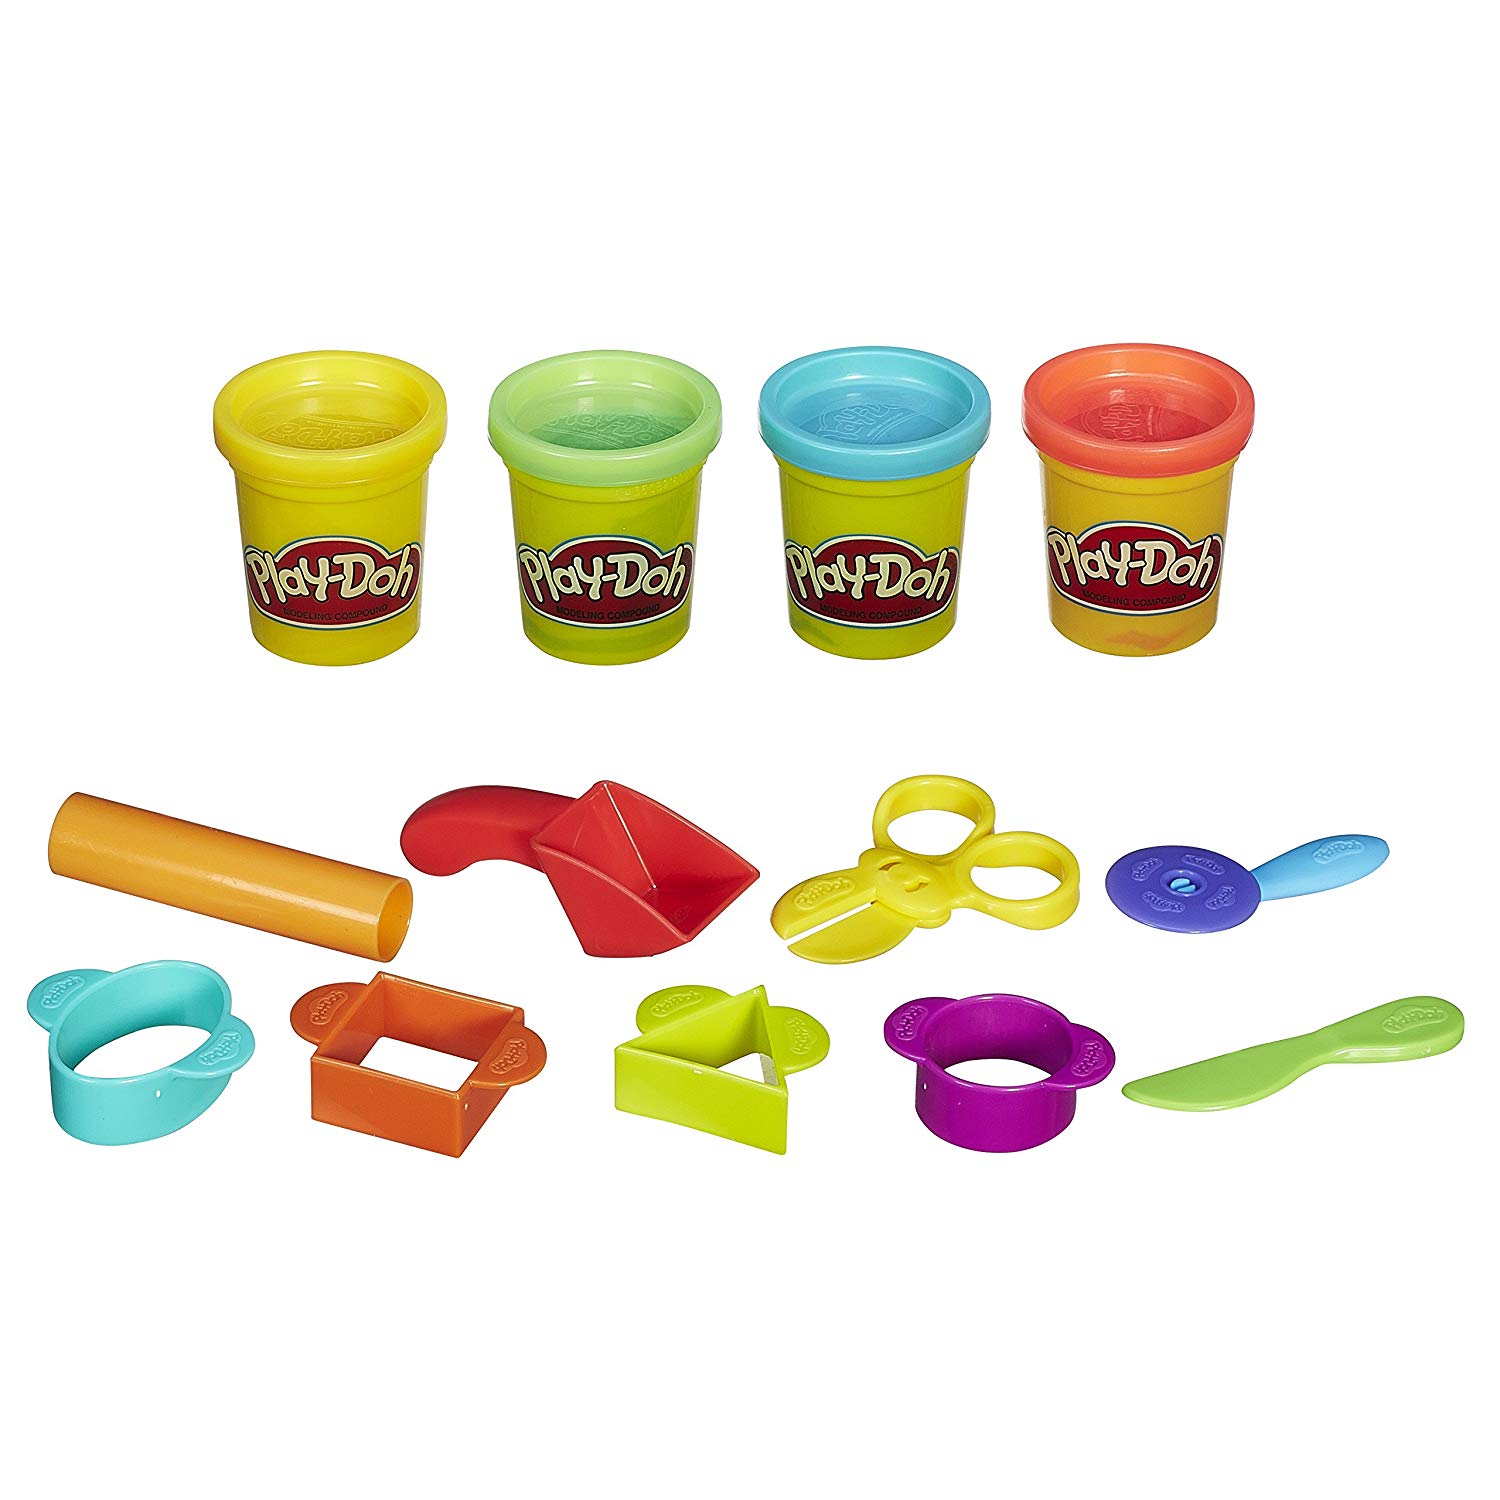 Пластилин для детей 9. Playdo пластилин набор. Пластилин Хасбро. Play-Doh Hasbro набор базовый. Пластилин "Play-Doh зубной врач".